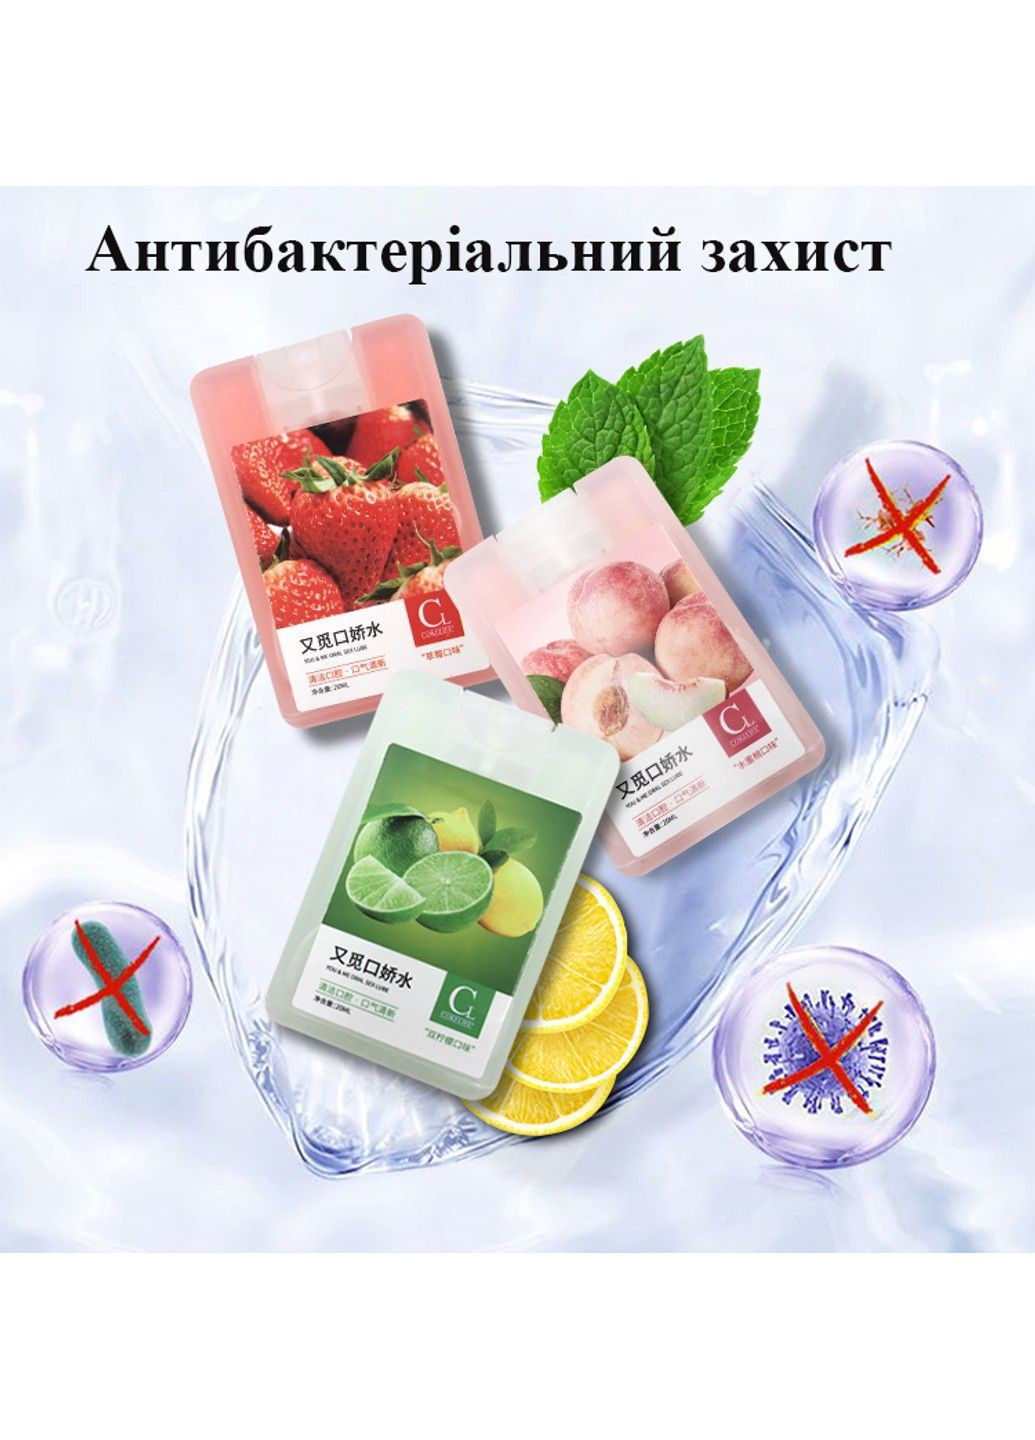 Антибактериальный спрей для оральных ласк со вкусом клубники 20 ml CokeLife (284279537)